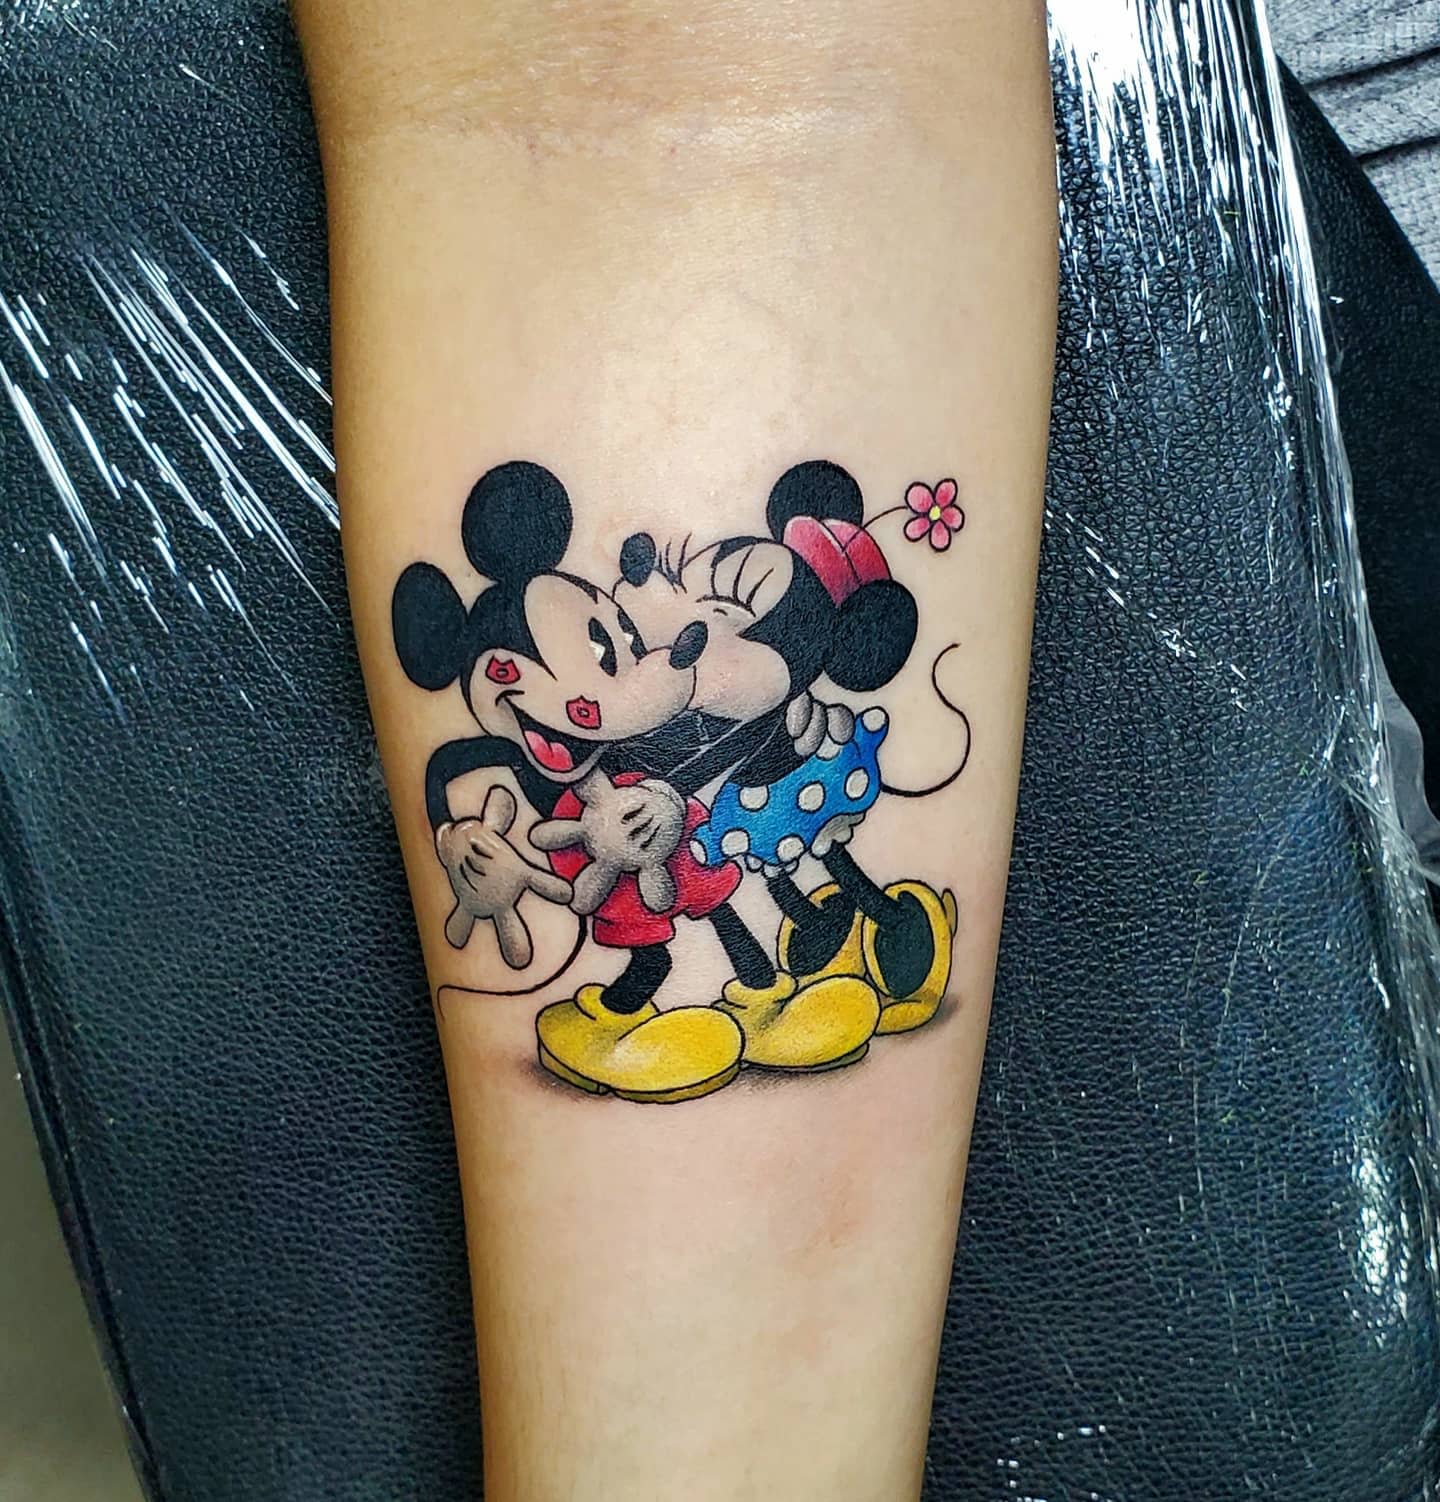 Tatuaz  Tattoo  Minnie mouse by CorvusCorax13 on DeviantArt